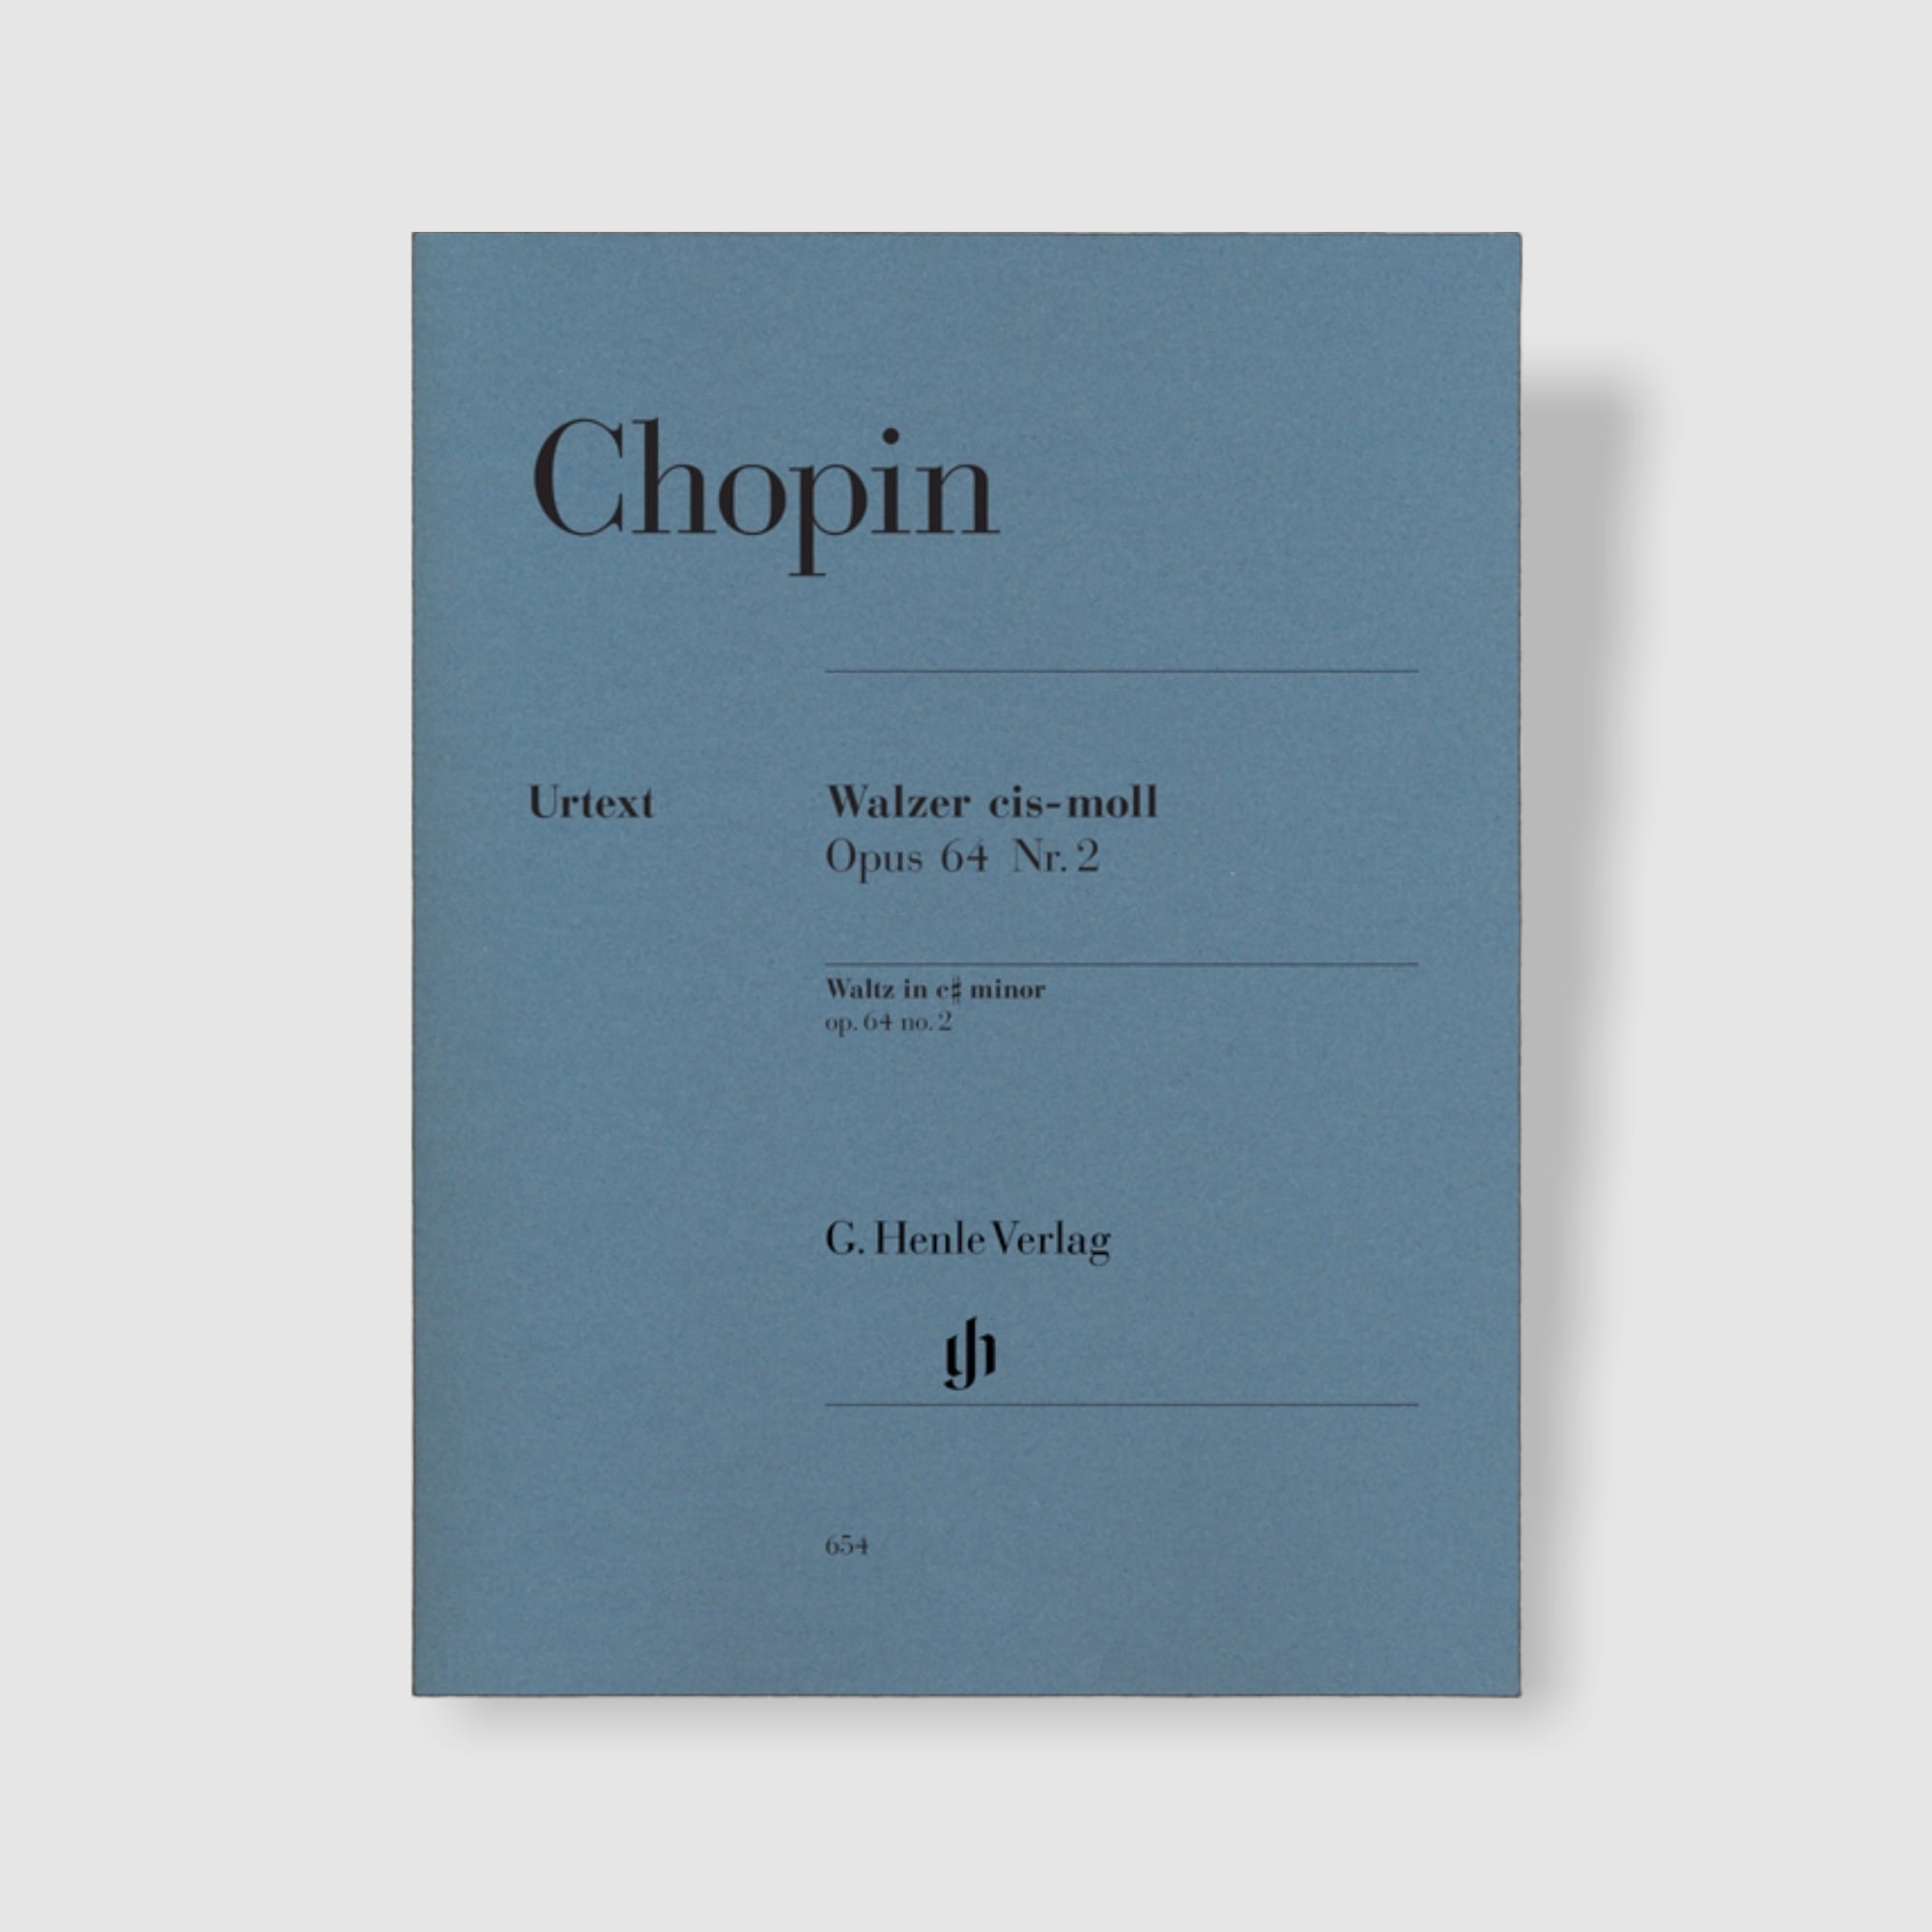 쇼팽 왈츠 in c sharp minor, Op. 64 No.2